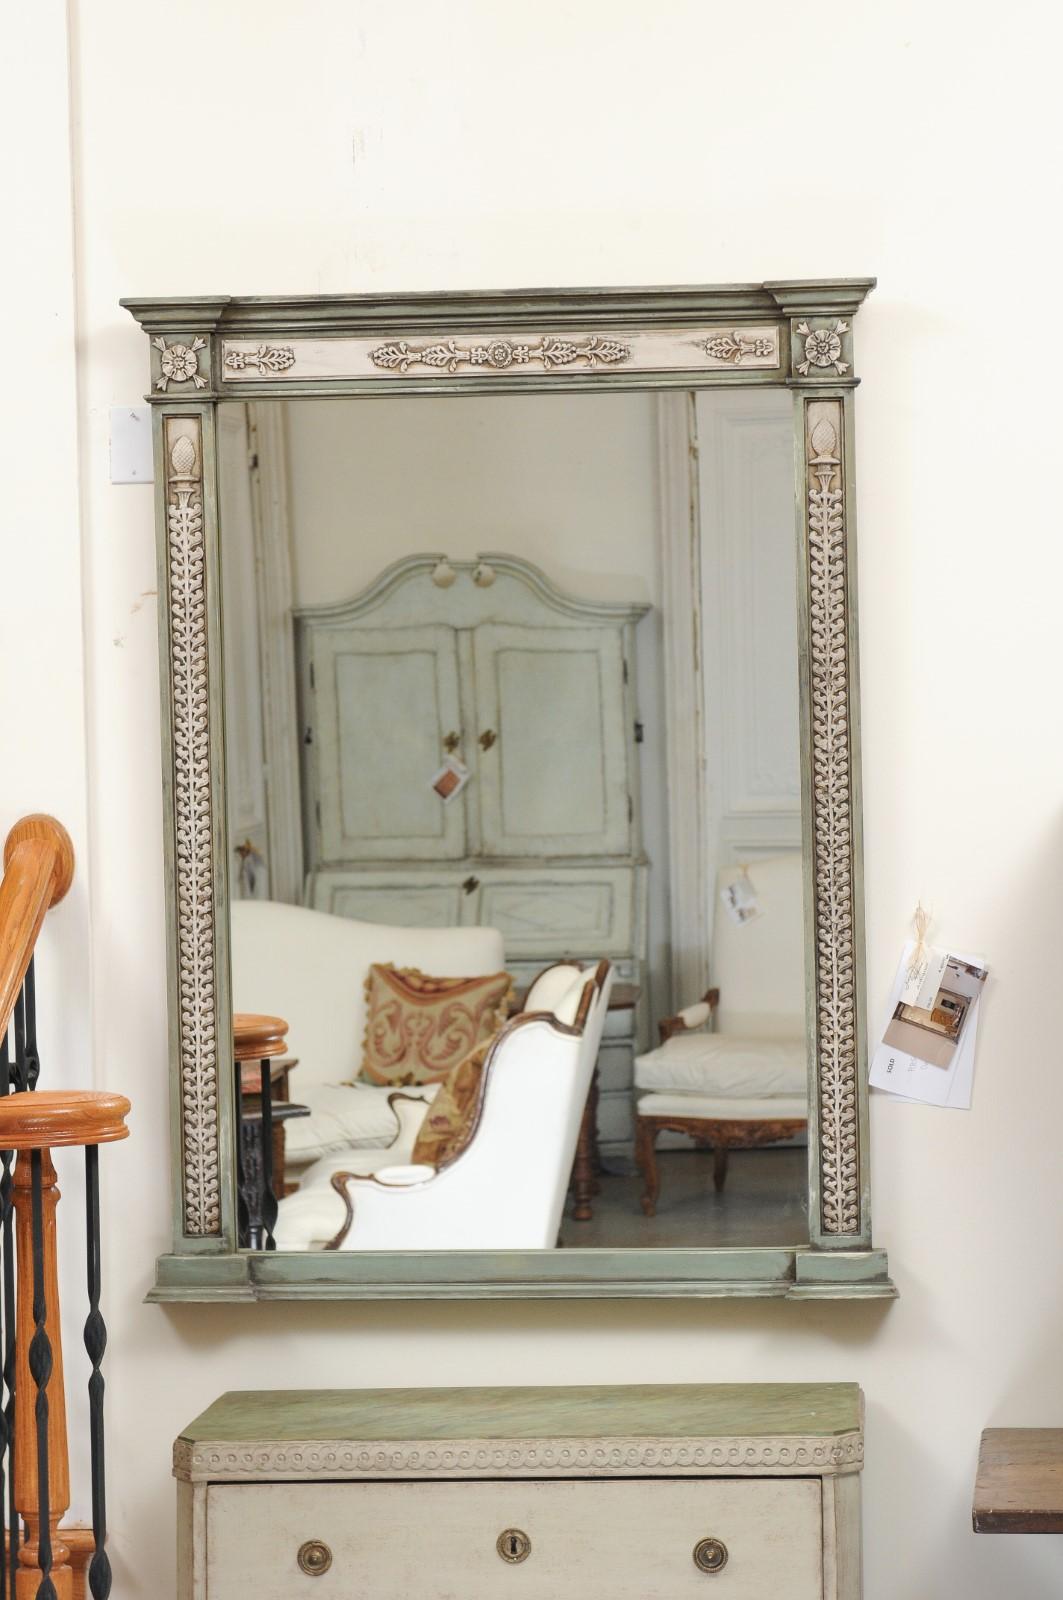 Ein hoher Spiegel aus bemaltem Holz, der aus einem französischen Türrahmen aus der Mitte des 18. Jahrhunderts mit geschnitzten Motiven gefertigt wurde, wird separat verkauft. Dieser Spiegel hat einen exquisiten linearen Rahmen, der aus französischen